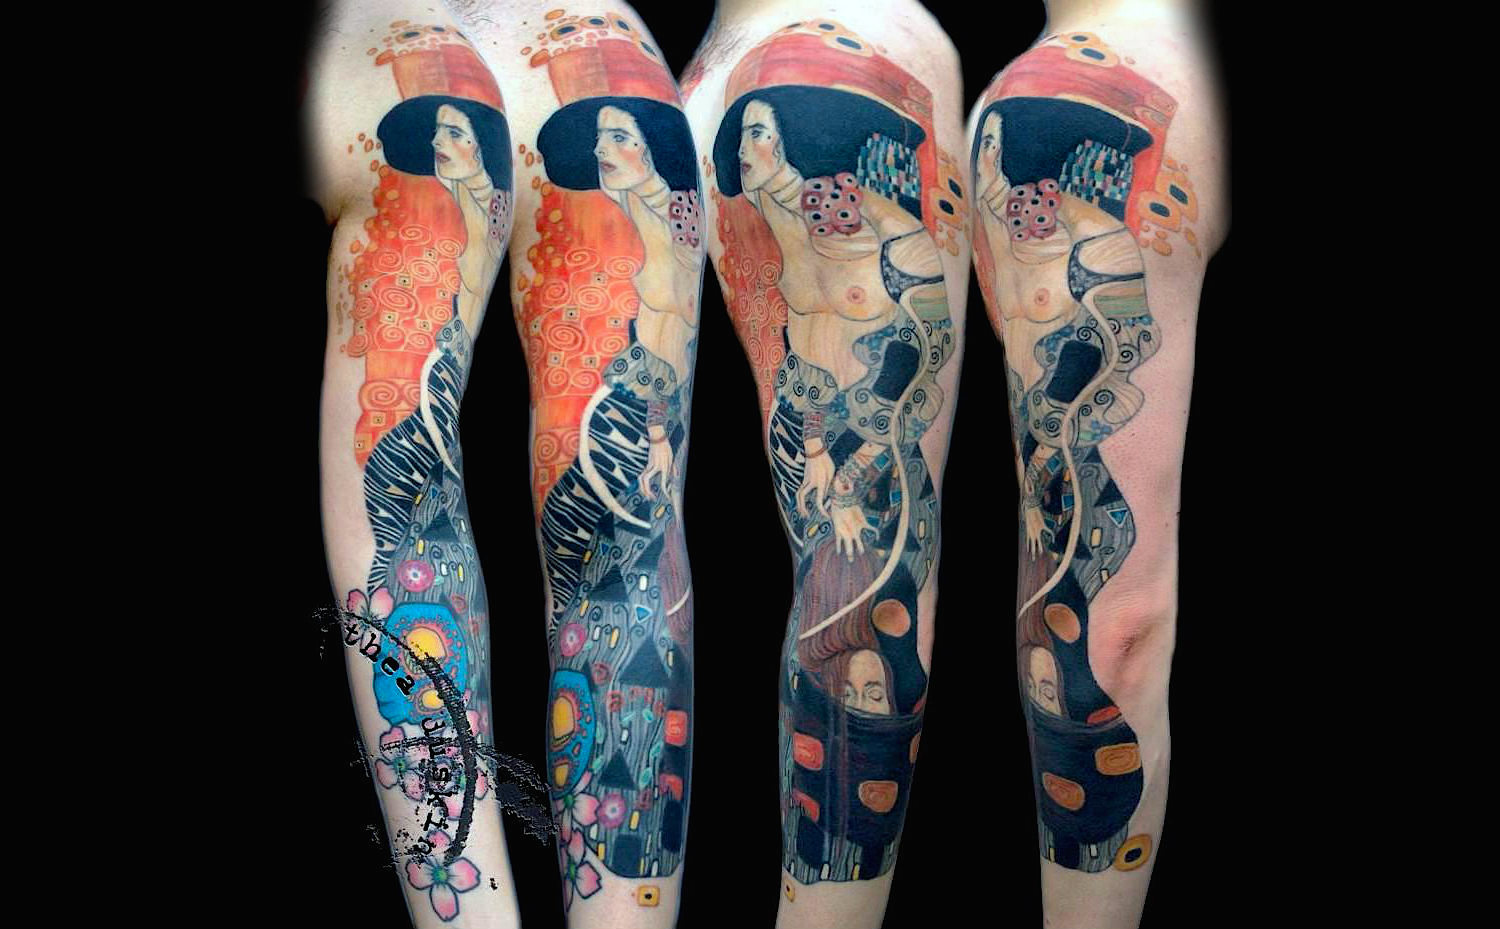 Gustav Klimt Judith tattoo sleeve by Thea Duskin